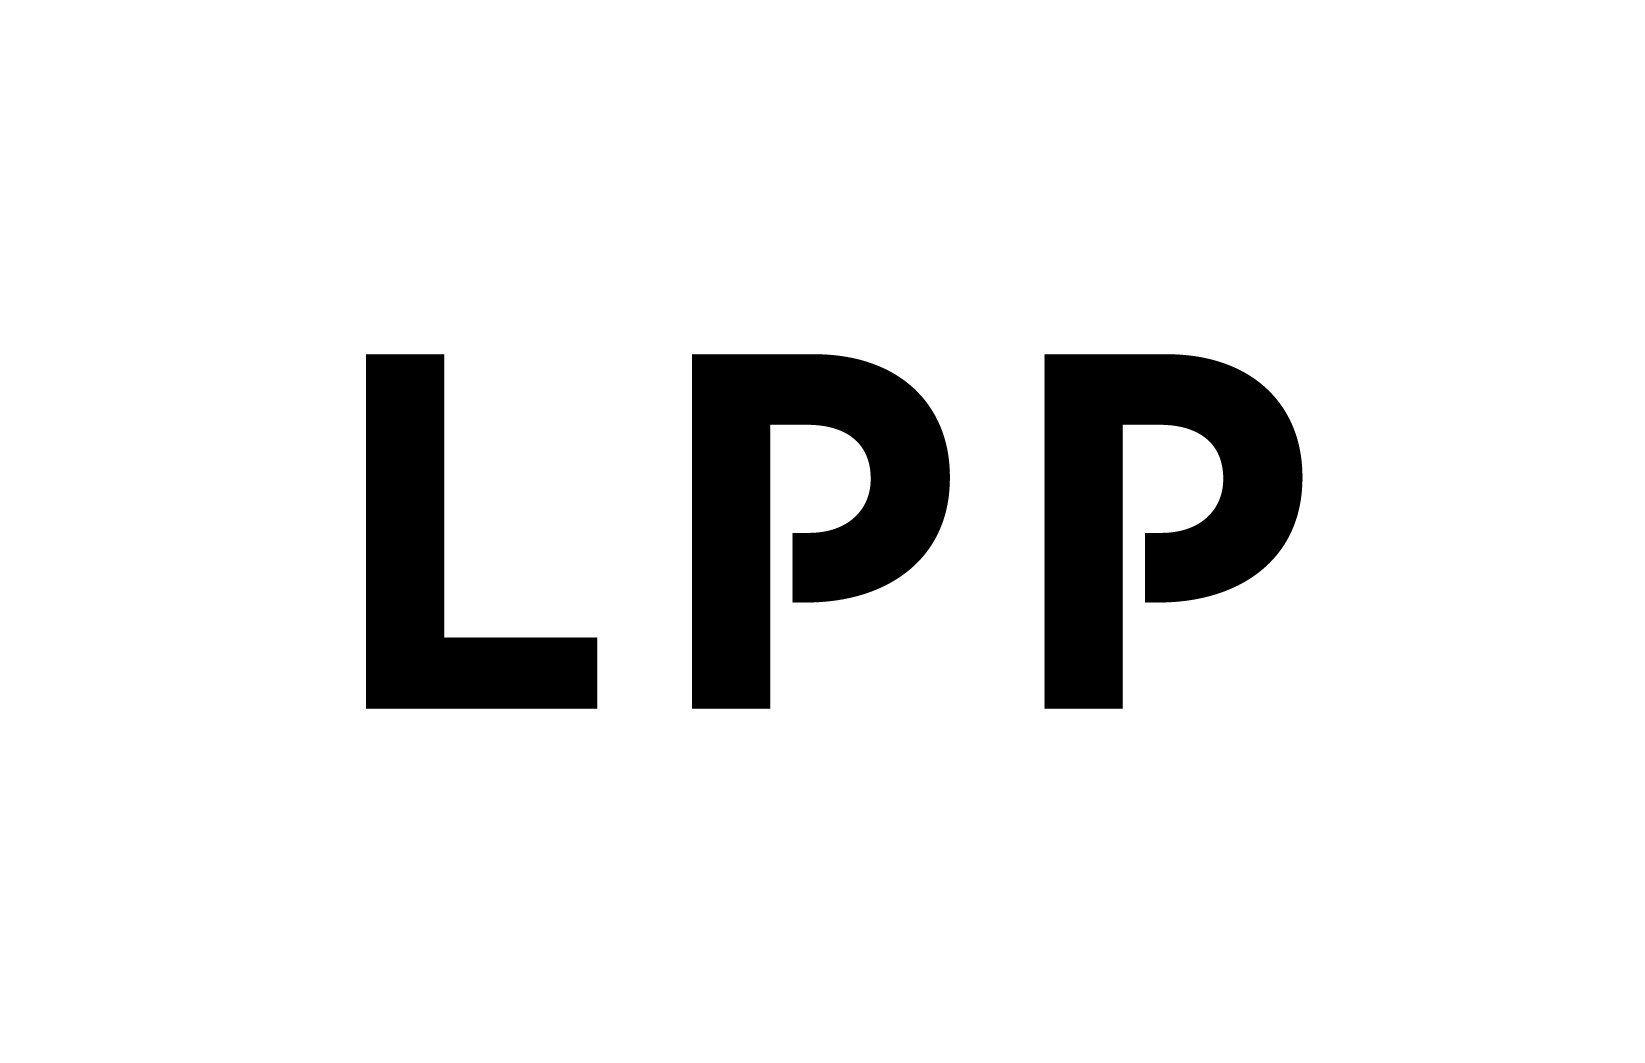 Logo of LPP stawia na zrównoważone rozwiązania